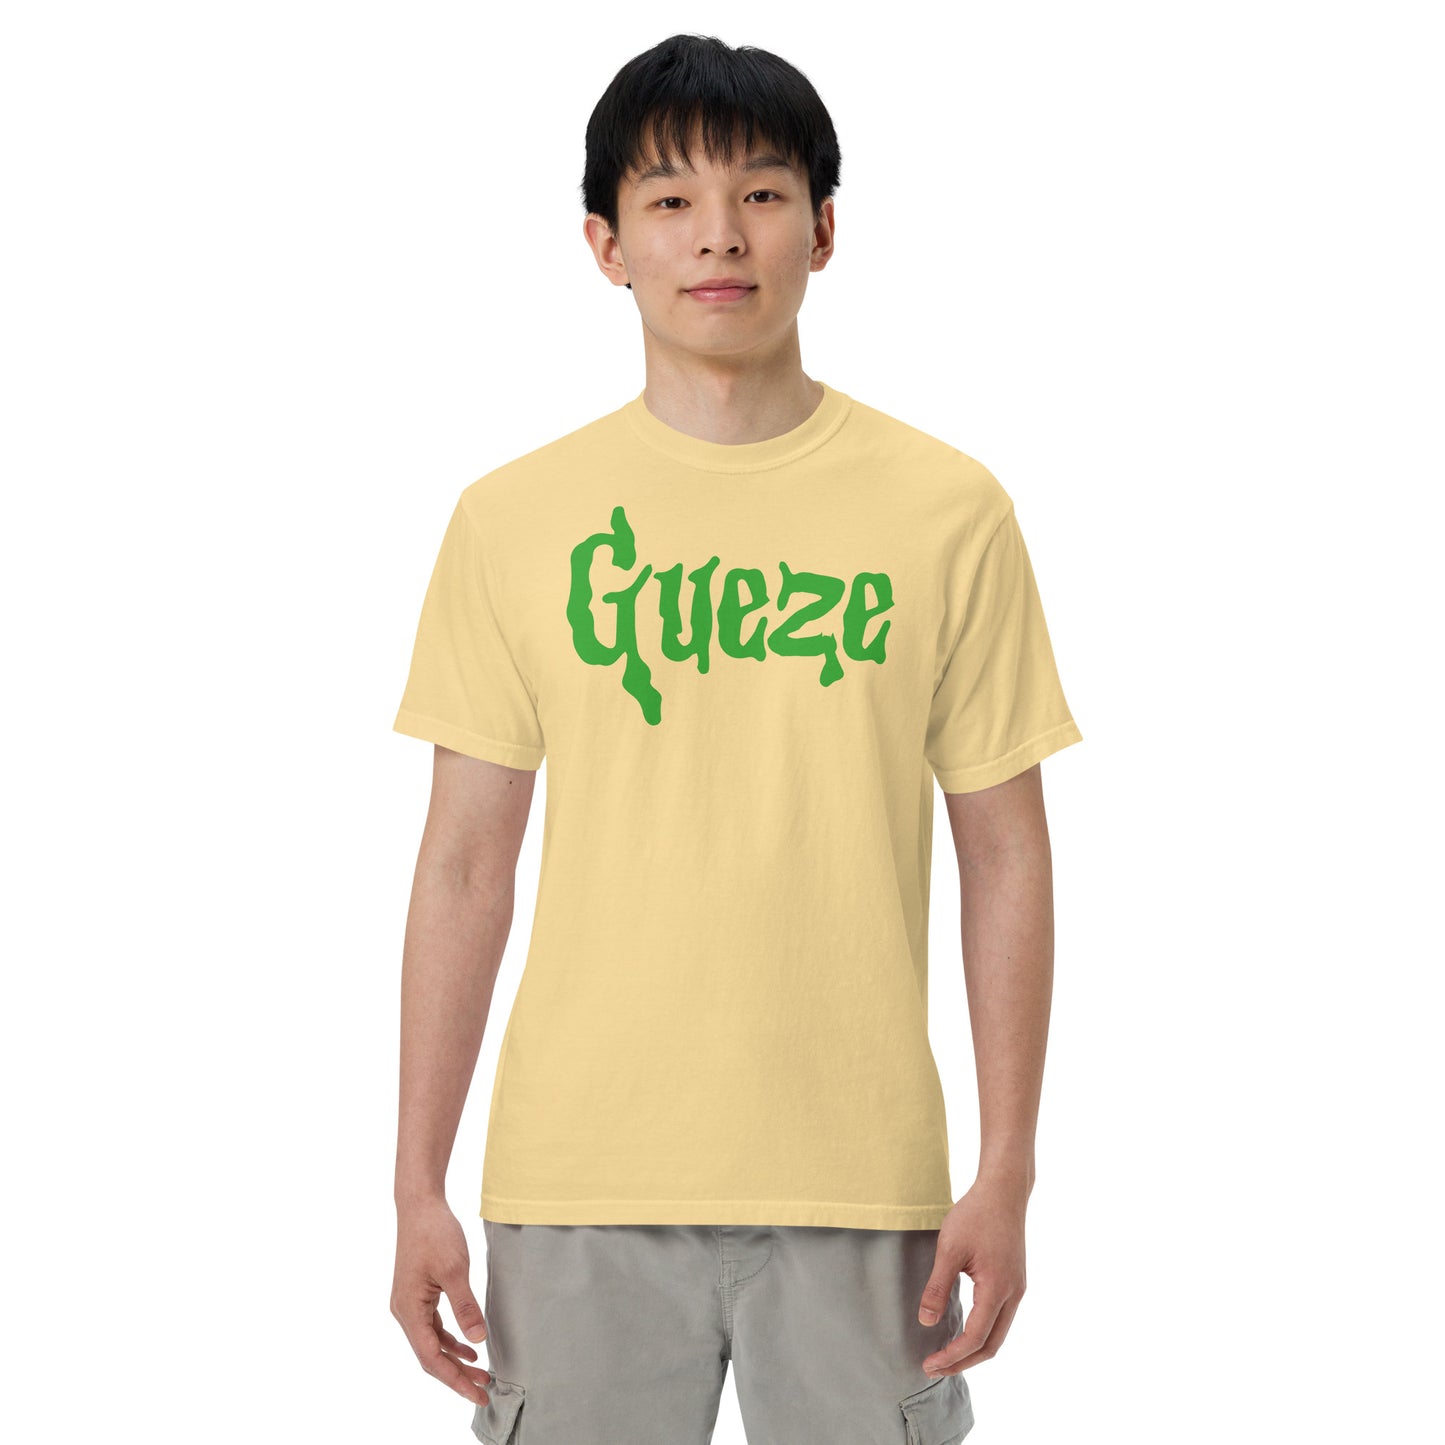 Gueze Slime Green heavyweight t-shirt Unisex